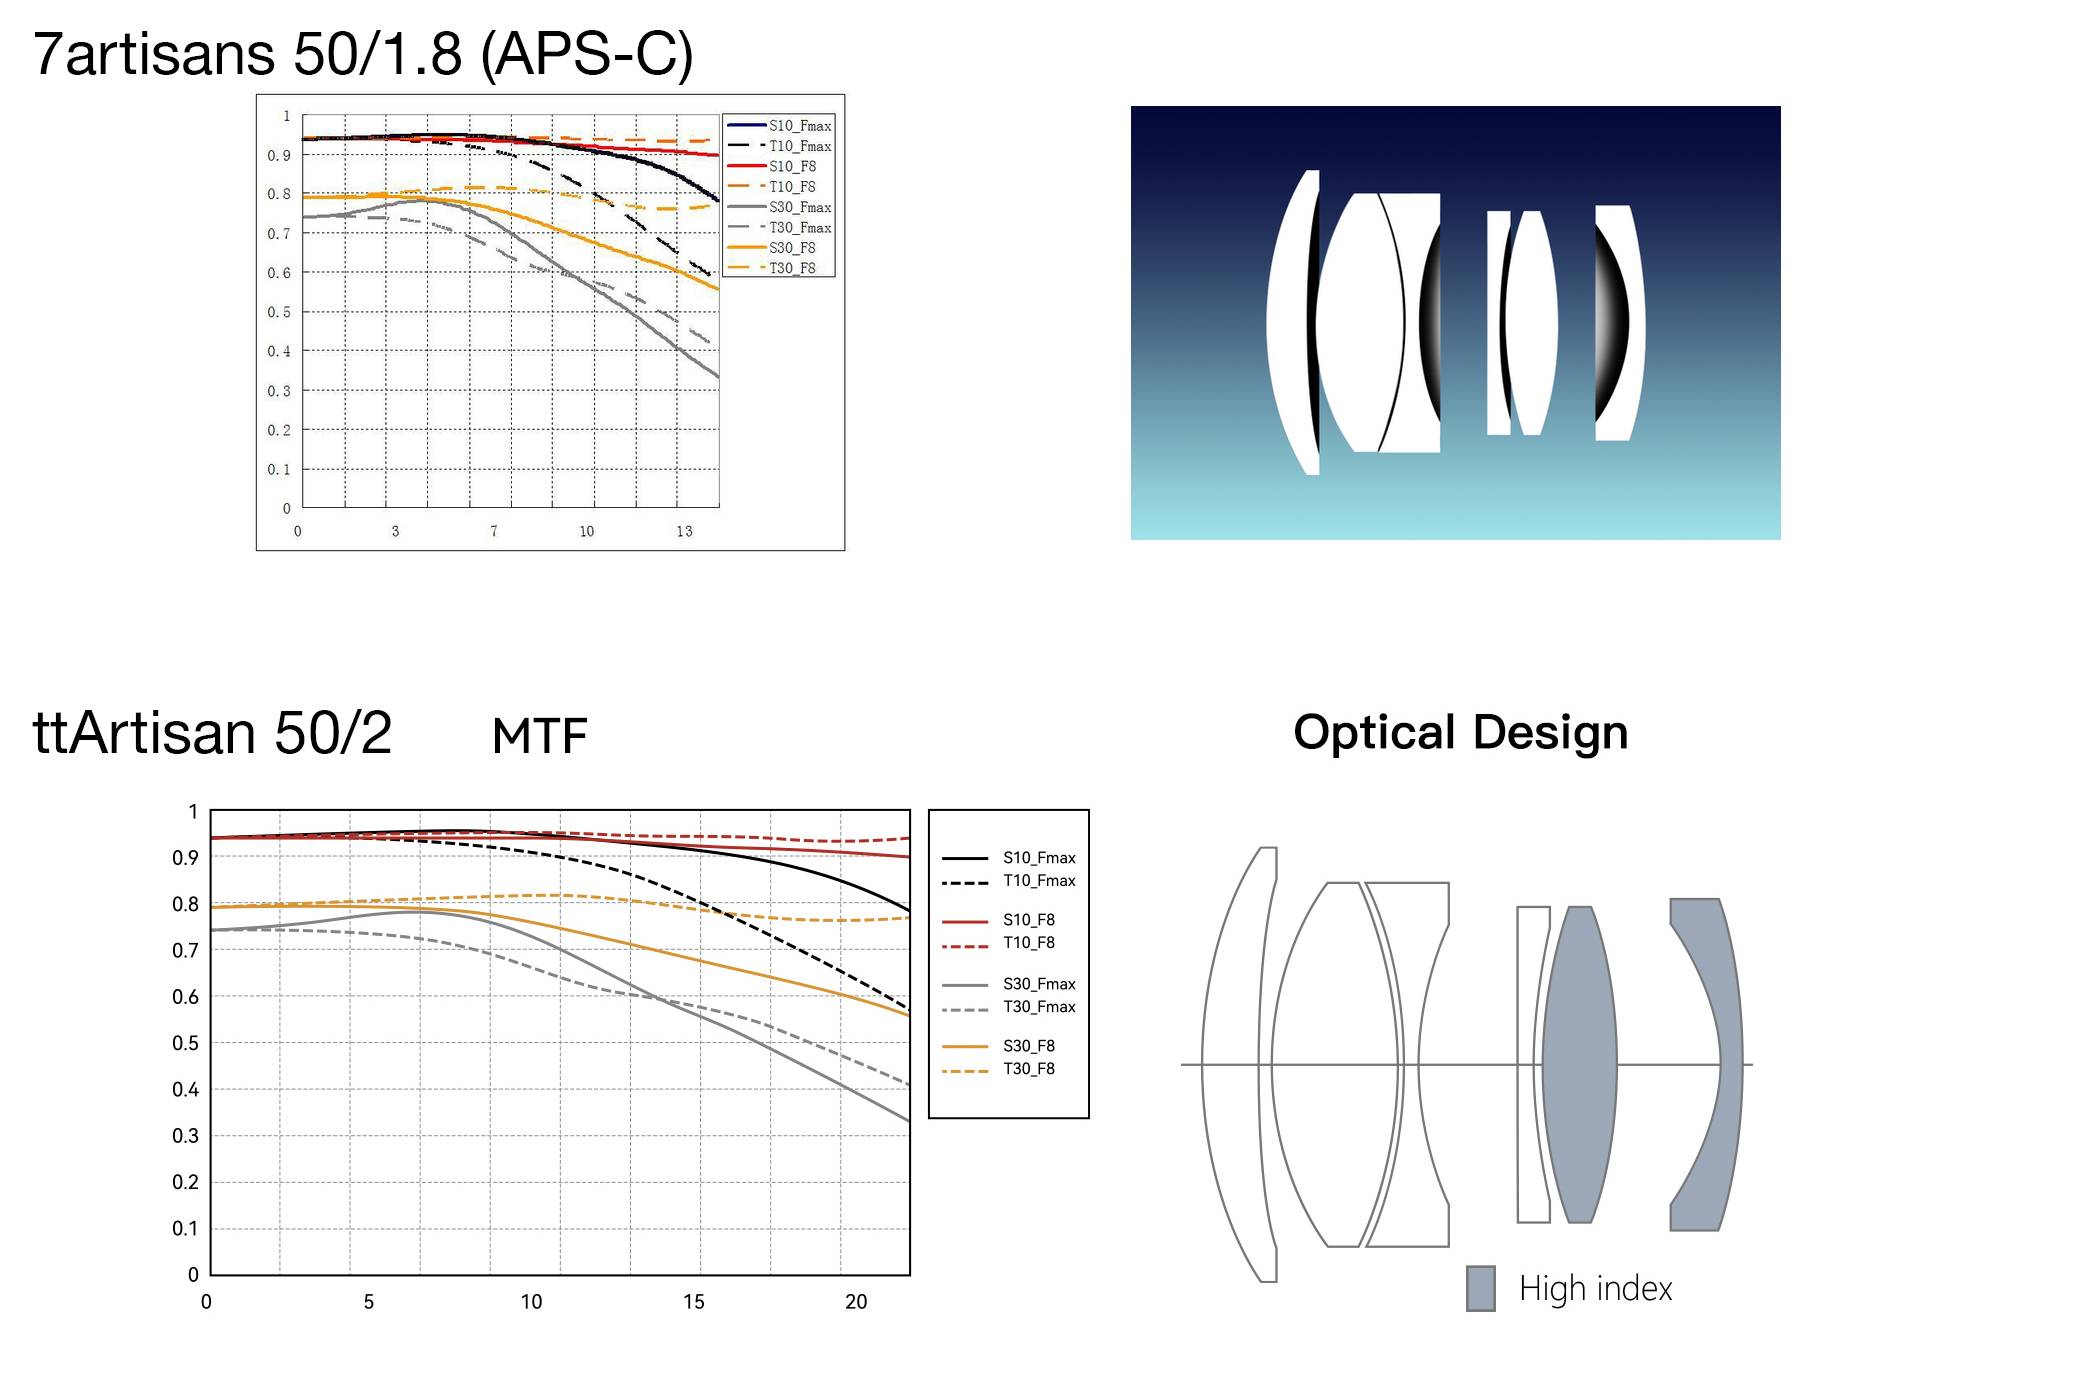 Vergelijking van optische diagrammen en MTF-grafieken van 7artisans 50/1.8 en TTArtisan 50/2 lenzen. De MTF-grafieken zijn volledig niet van elkaar te onderscheiden, maar ze hebben verschillende labels langs de beeldhoogte-as, wat bedrog is van de kant van de fabrikant!